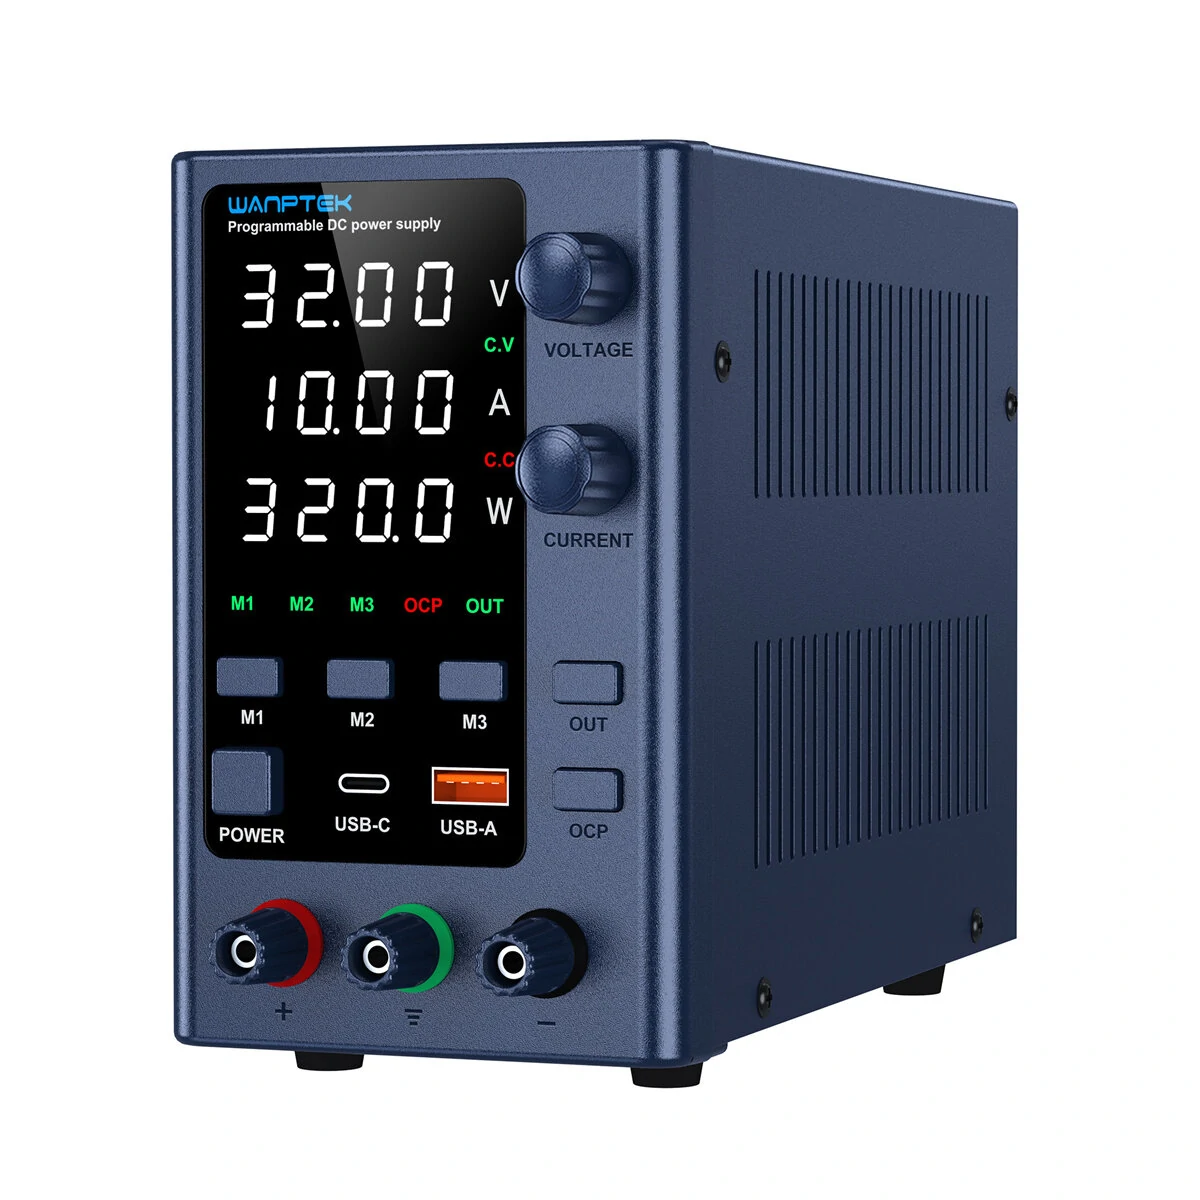 Στα 71,40€ από αποθήκη Κίνας | WANPTEK Regulated Power Supply with 0-160V Voltage 0-10A Current Multi-Function Protection Superior Stability Digital Display ideal for Diverse Electronics Application EPS3205/EPS3210/EPS6205/EPS1203/EPS1602